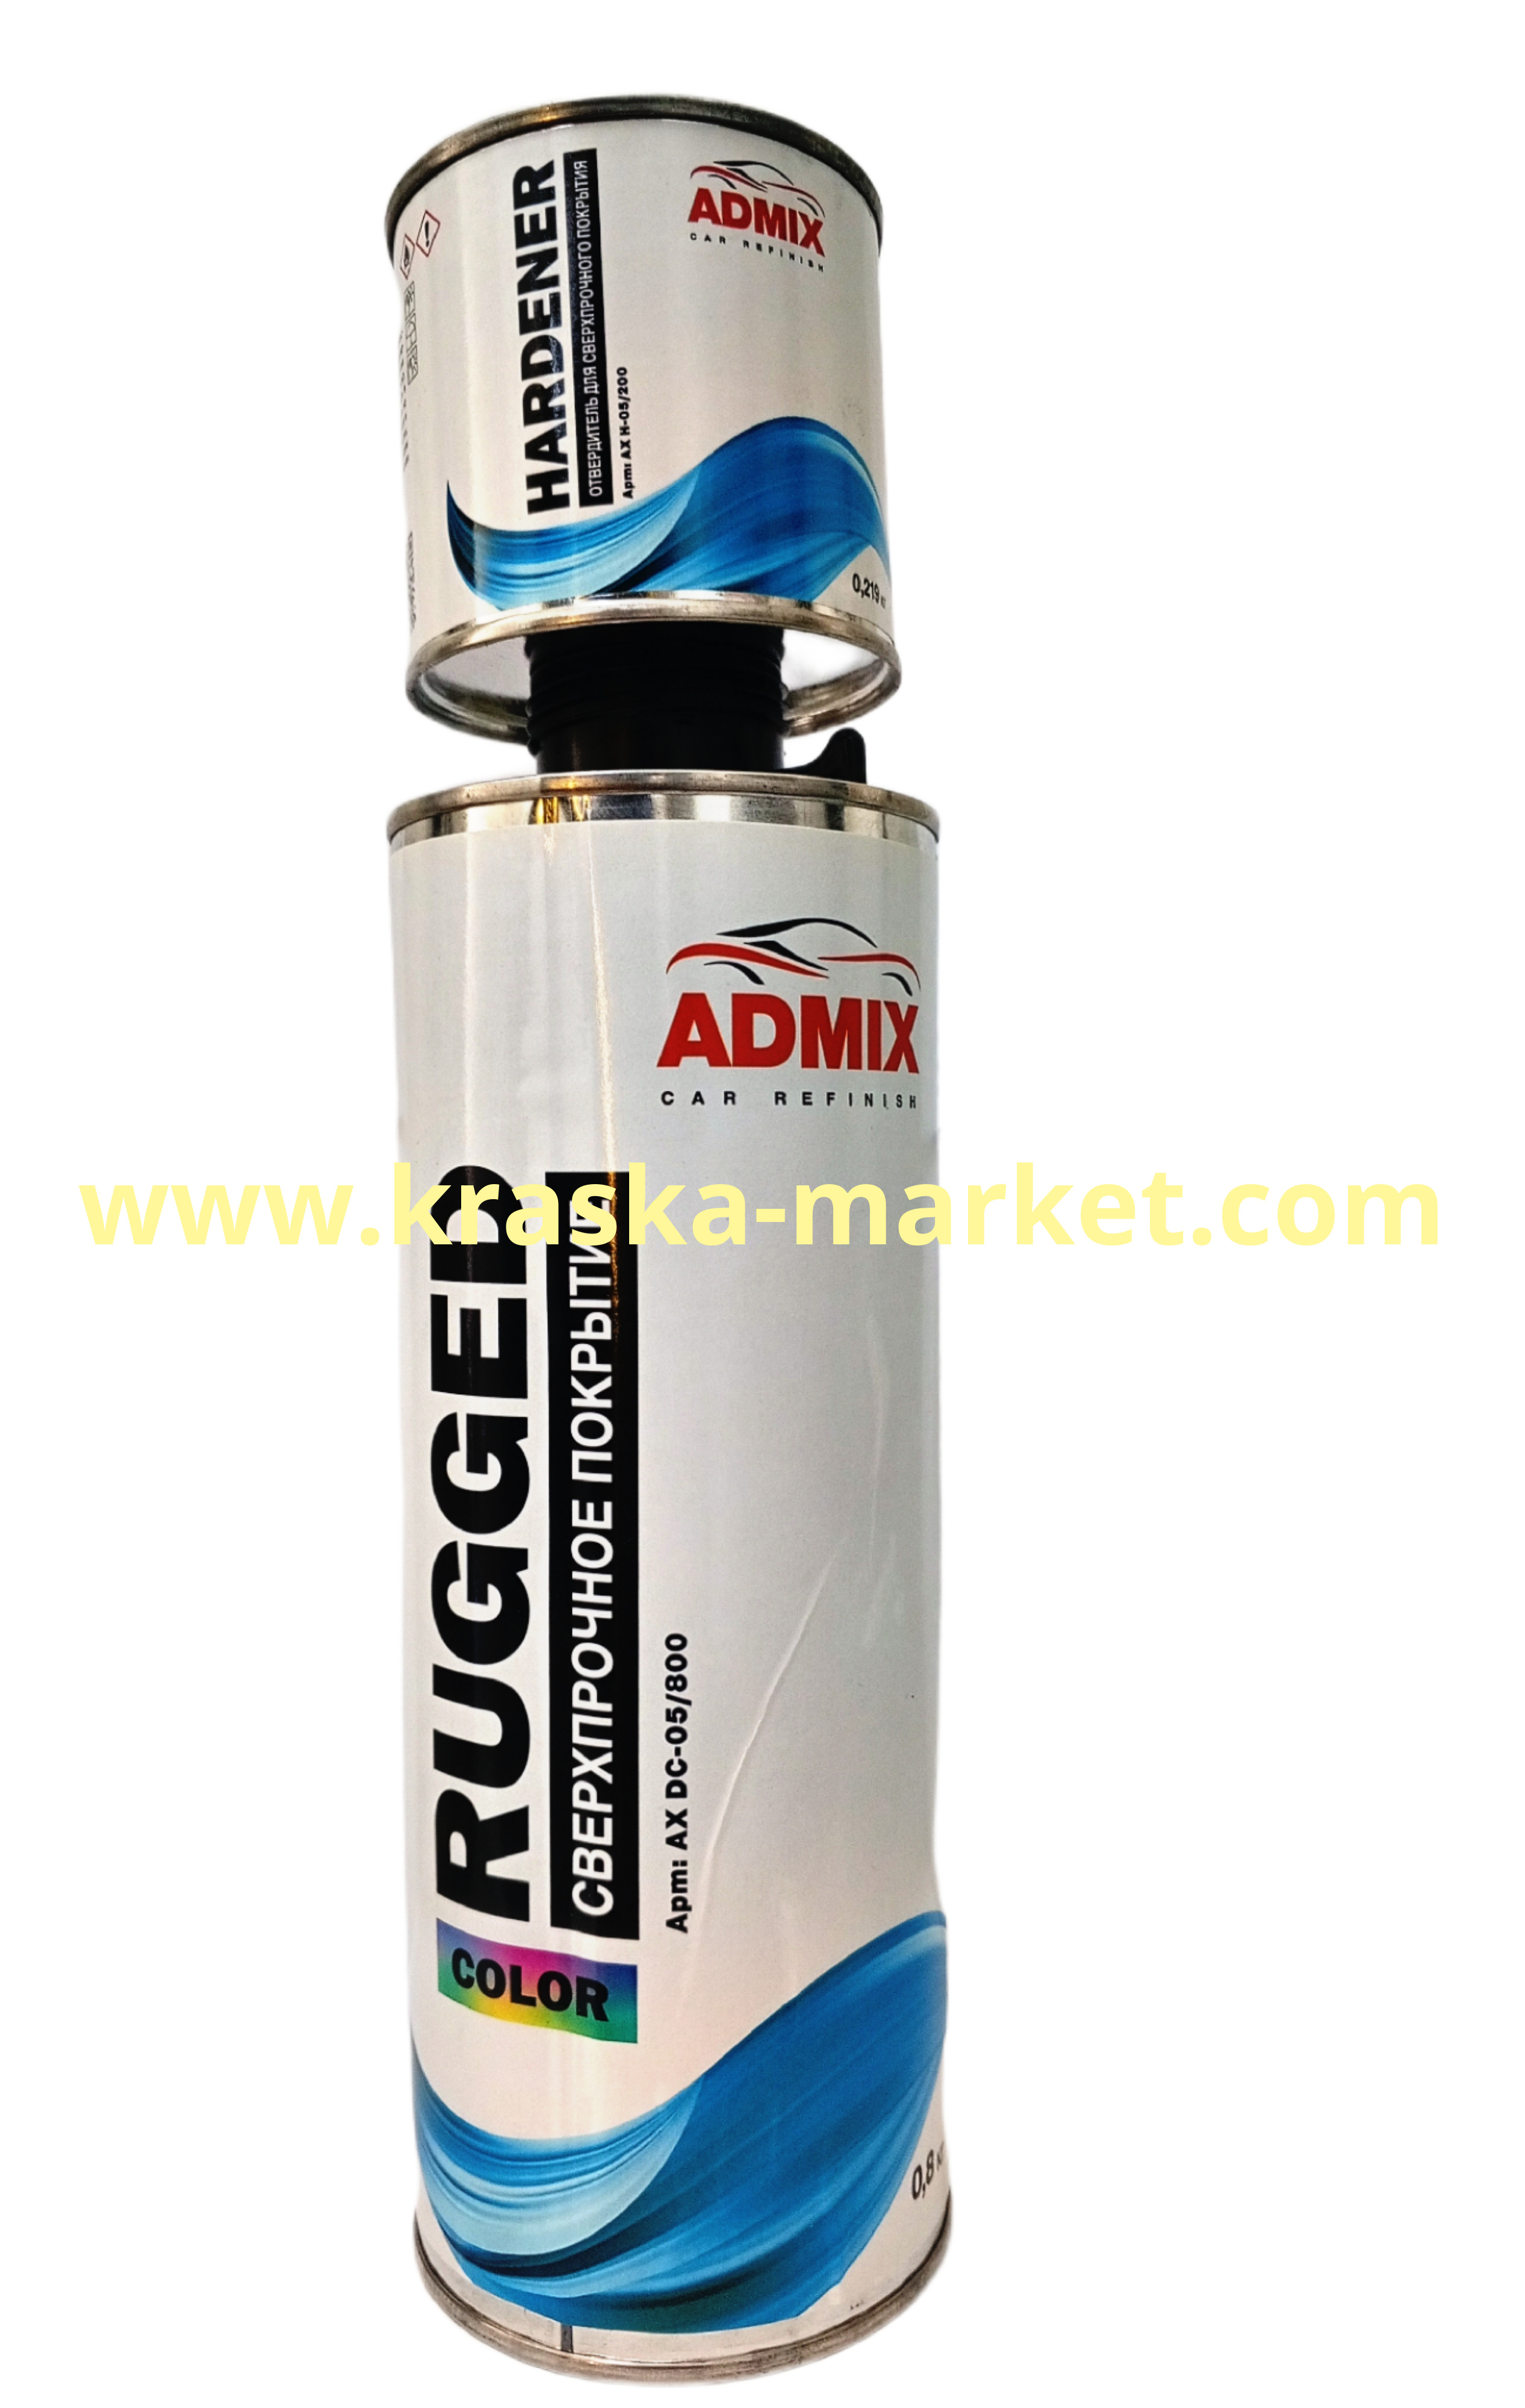 Покрытие ADMIX повышенной прочности. Цвет: колеруемый. Объем(м3): 0,8 + отвердитель 0,219. Торговая марка: ADMIX.